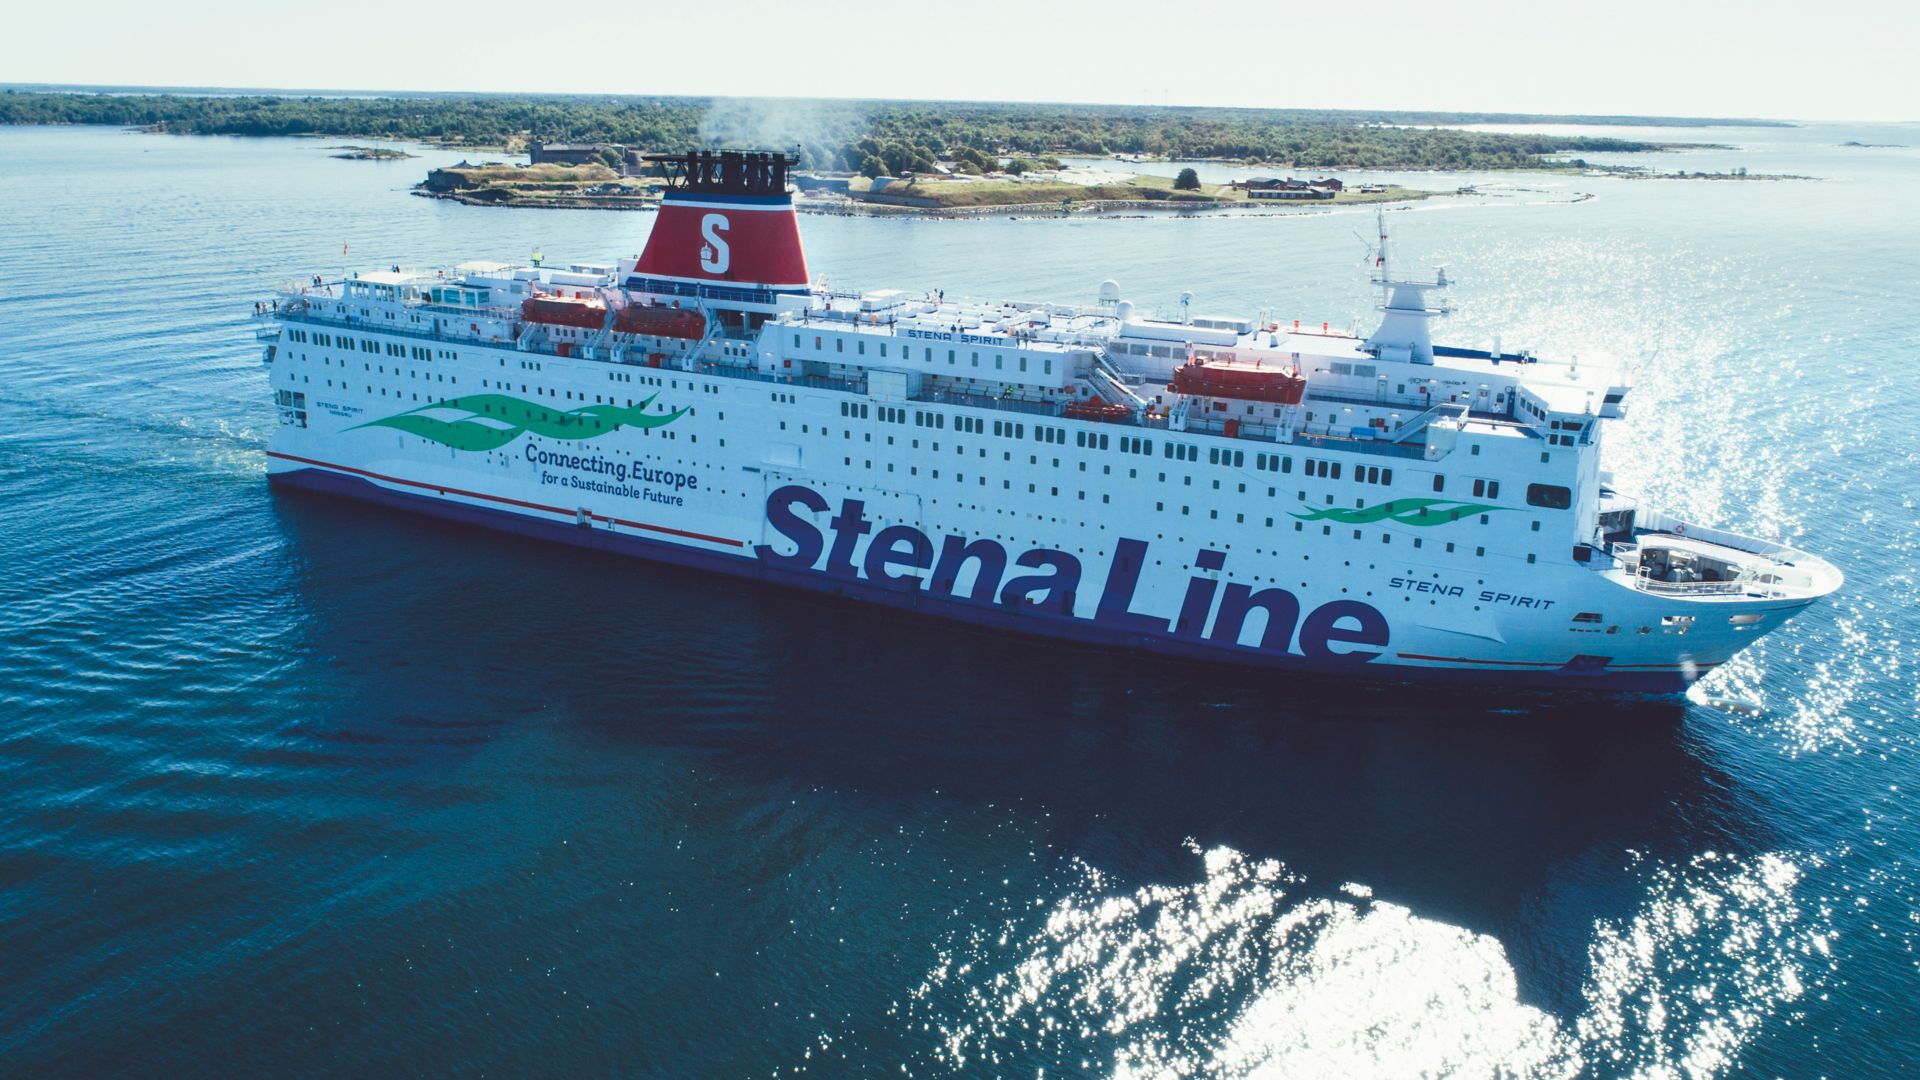 Stena Spirit ferry en mer